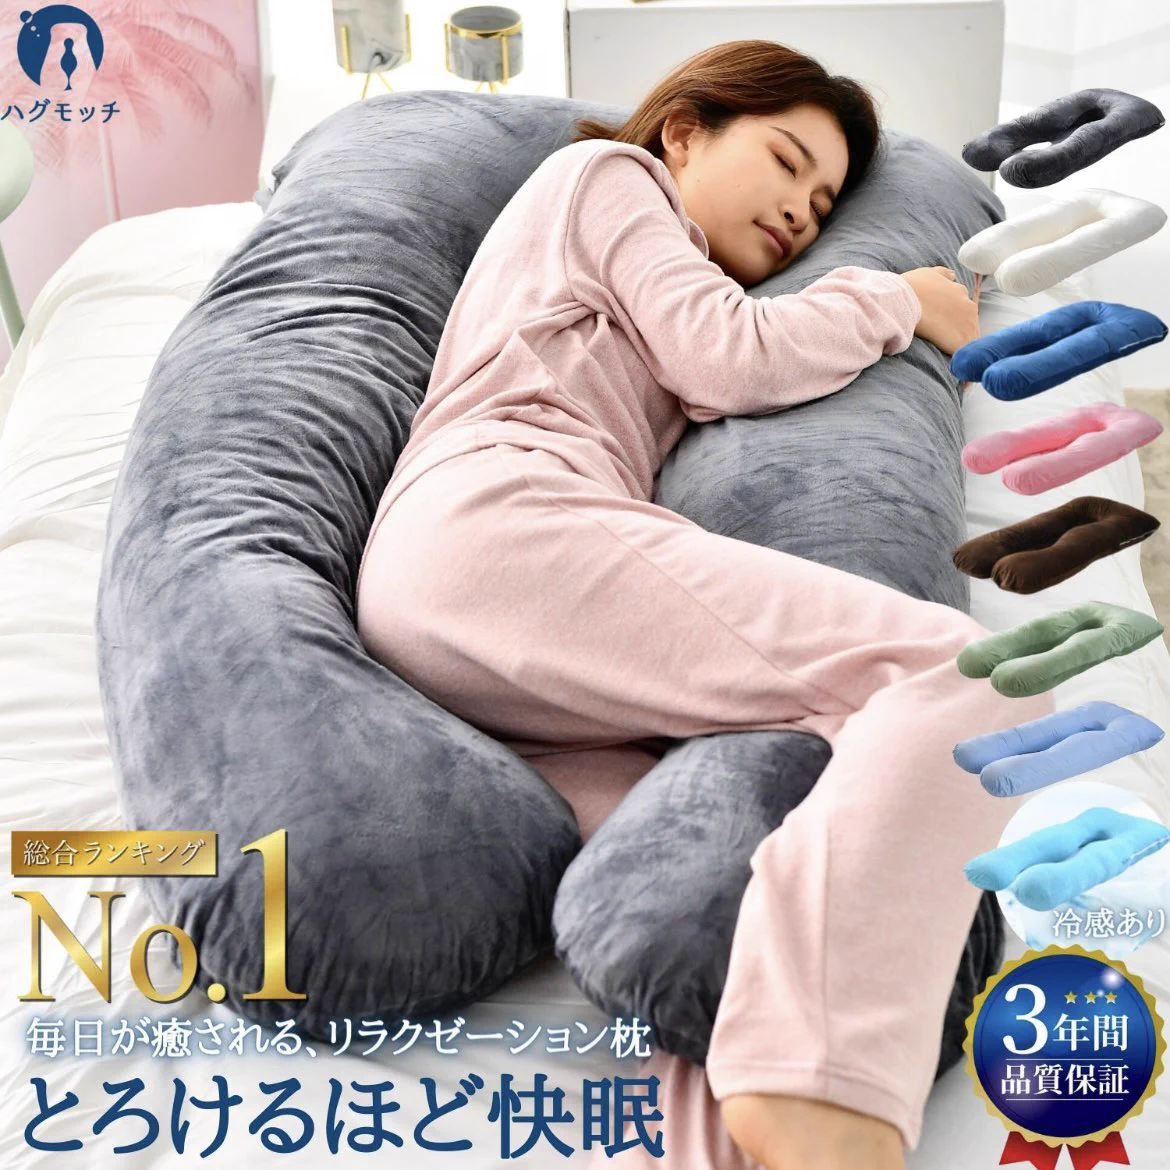 とろけるほどの快眠。全身包まれるタイプの抱き枕がすごい。